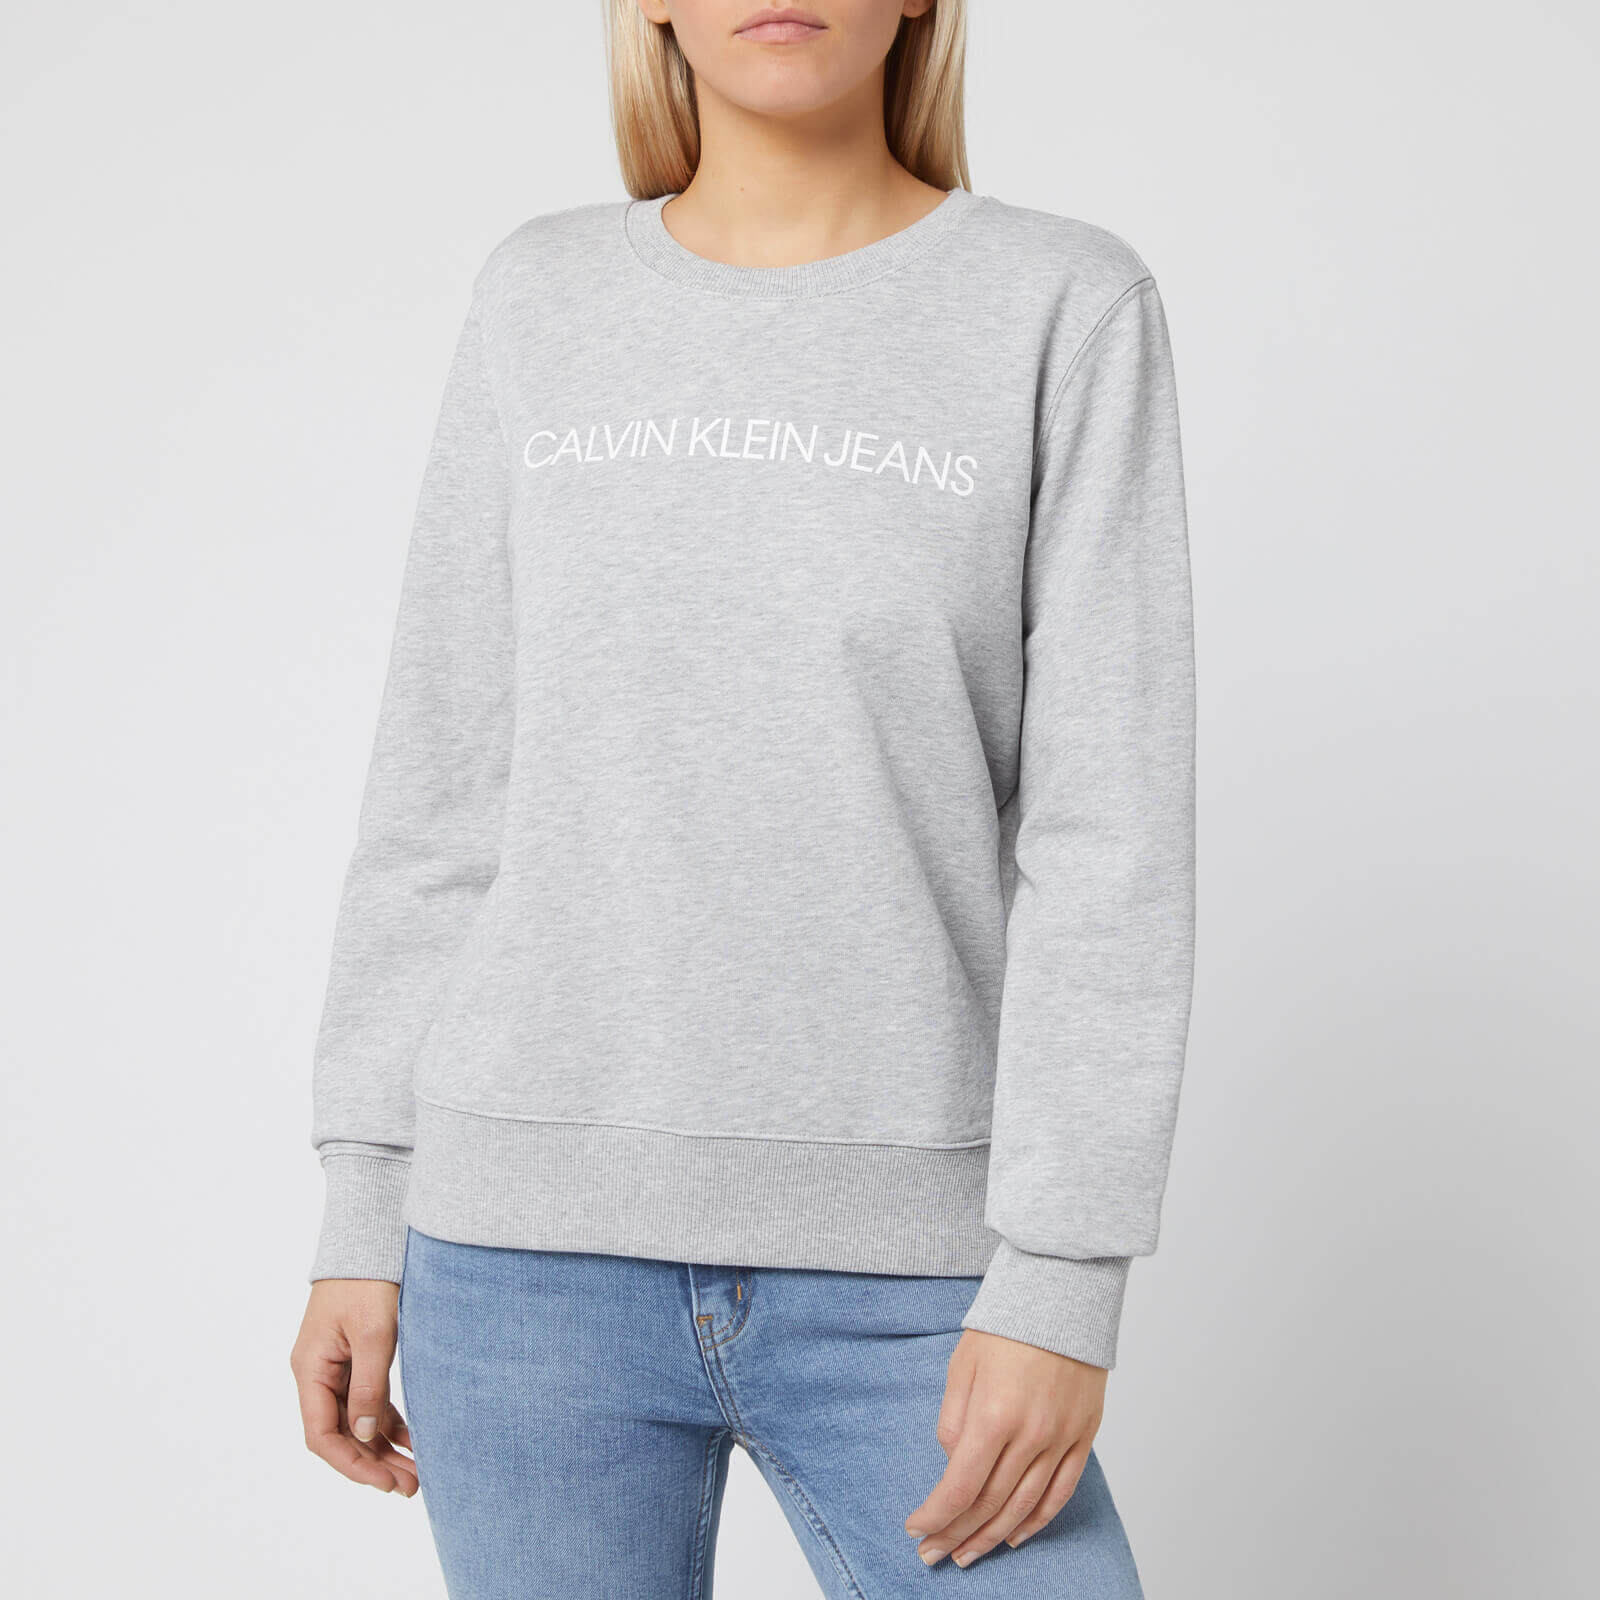 grey calvin klein sweatshirt womens